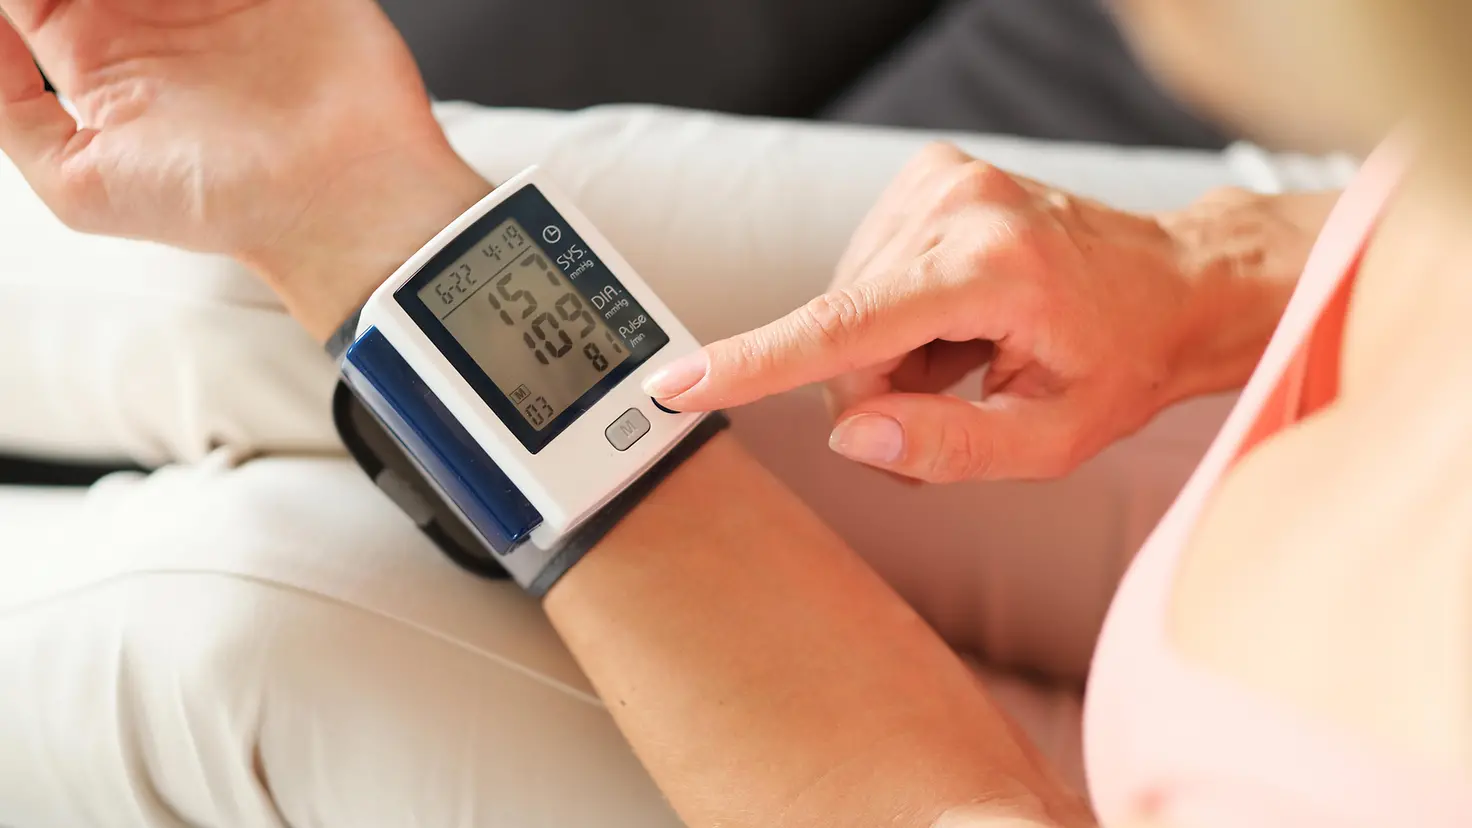 Ein Blutdruckmessgerät an einem Handgelenk einer Person zeigt die Blutdruckwerte an.